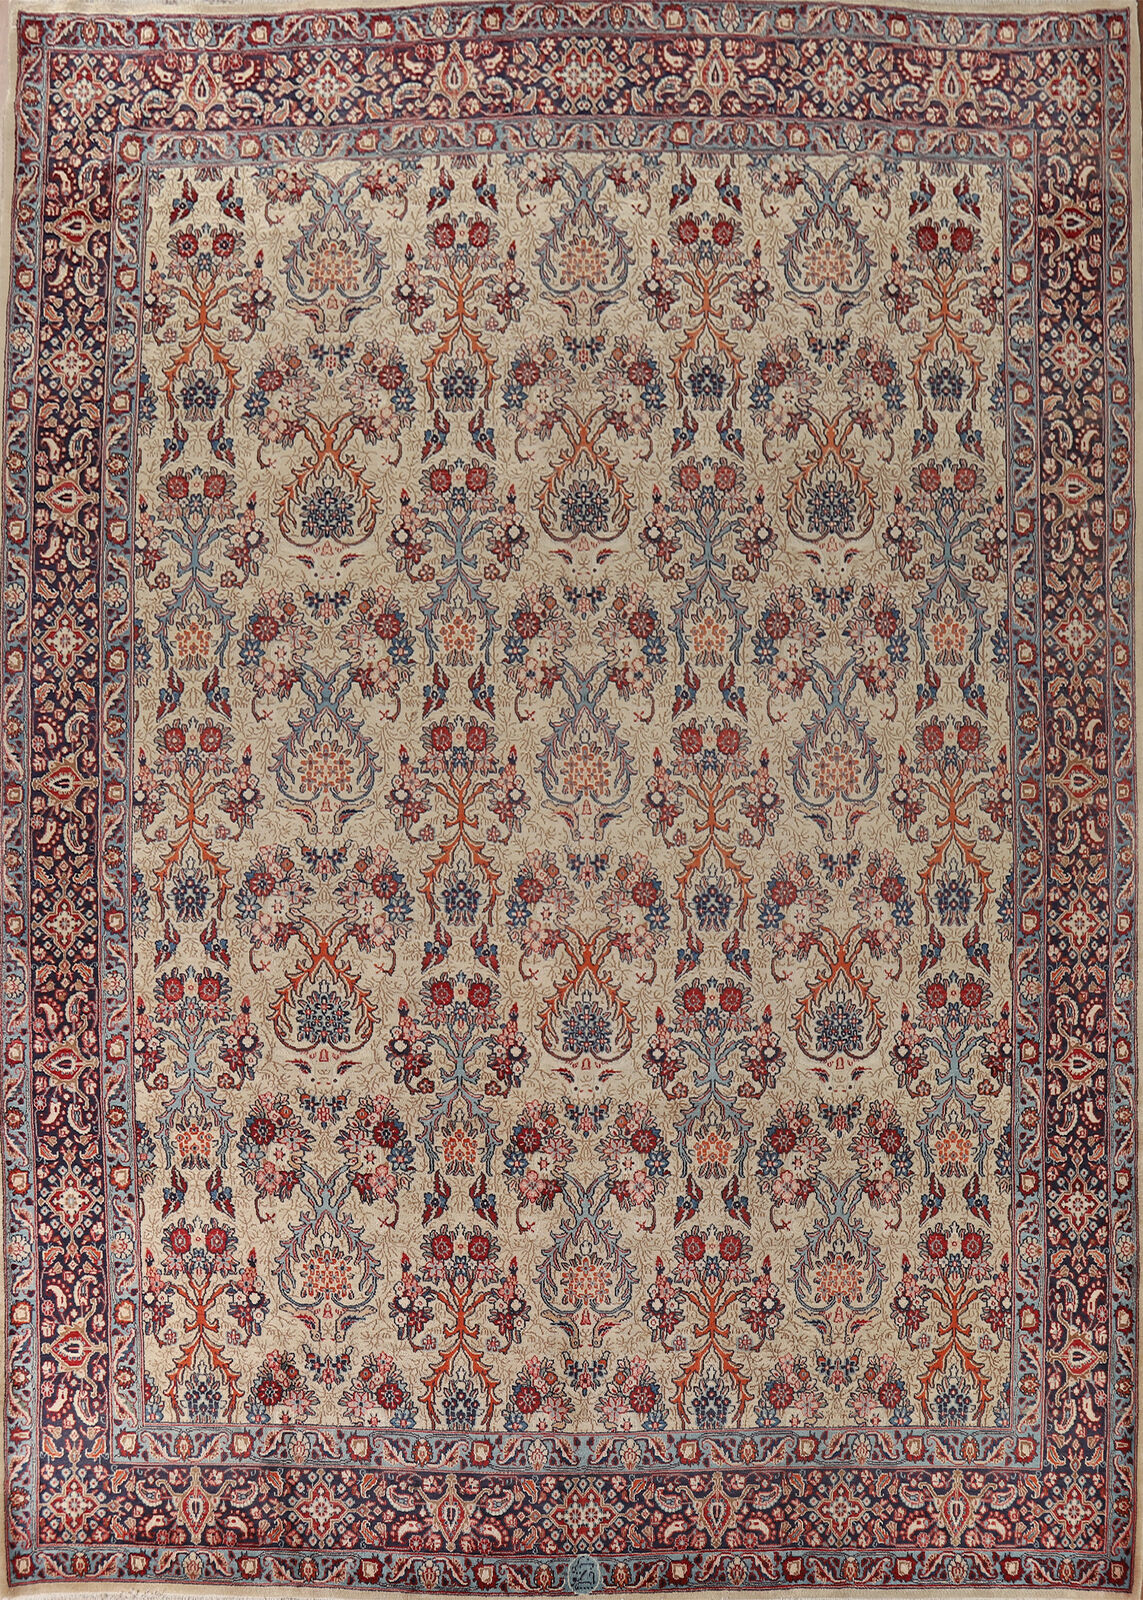 Vintage Ivory/ Navy Blue Handmade Floral Mood Living Room Rug Area Carpet 10x13